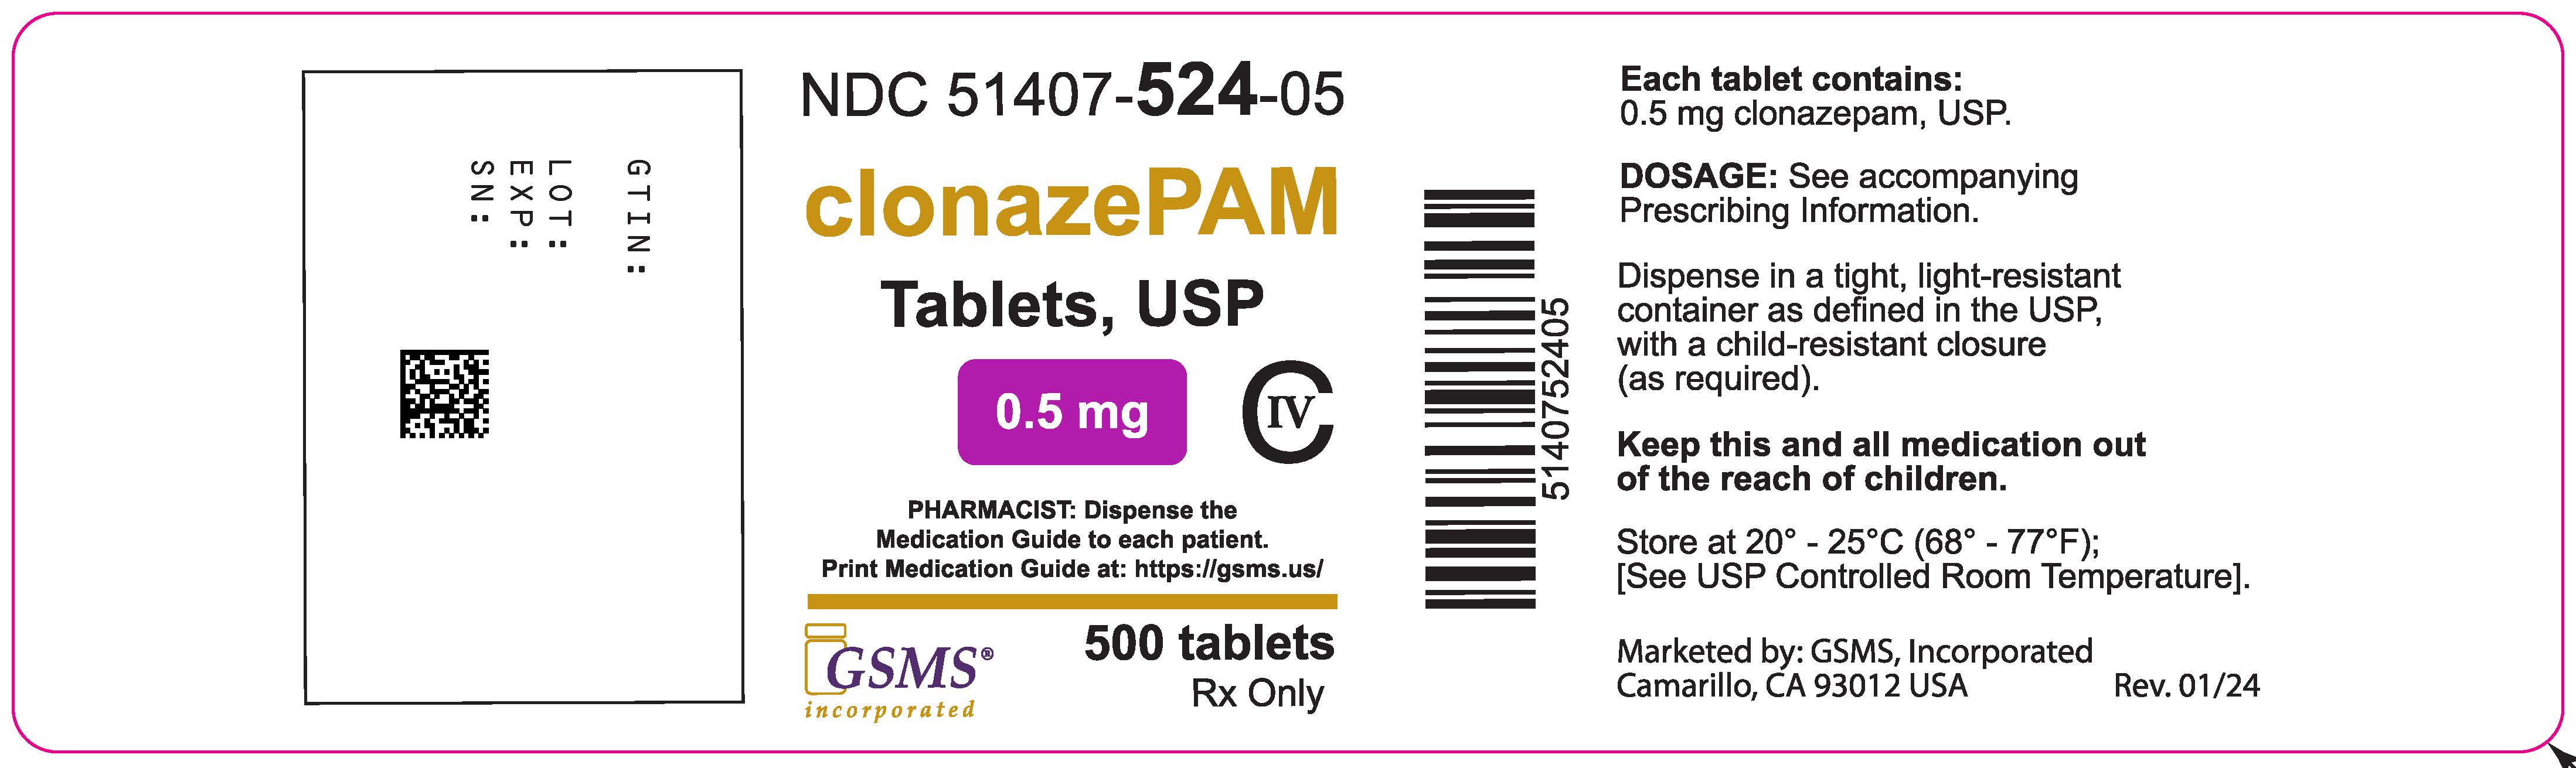 Clonazepam Tablets - 51407-524-05OL - Teva - Rev 0124.jpg